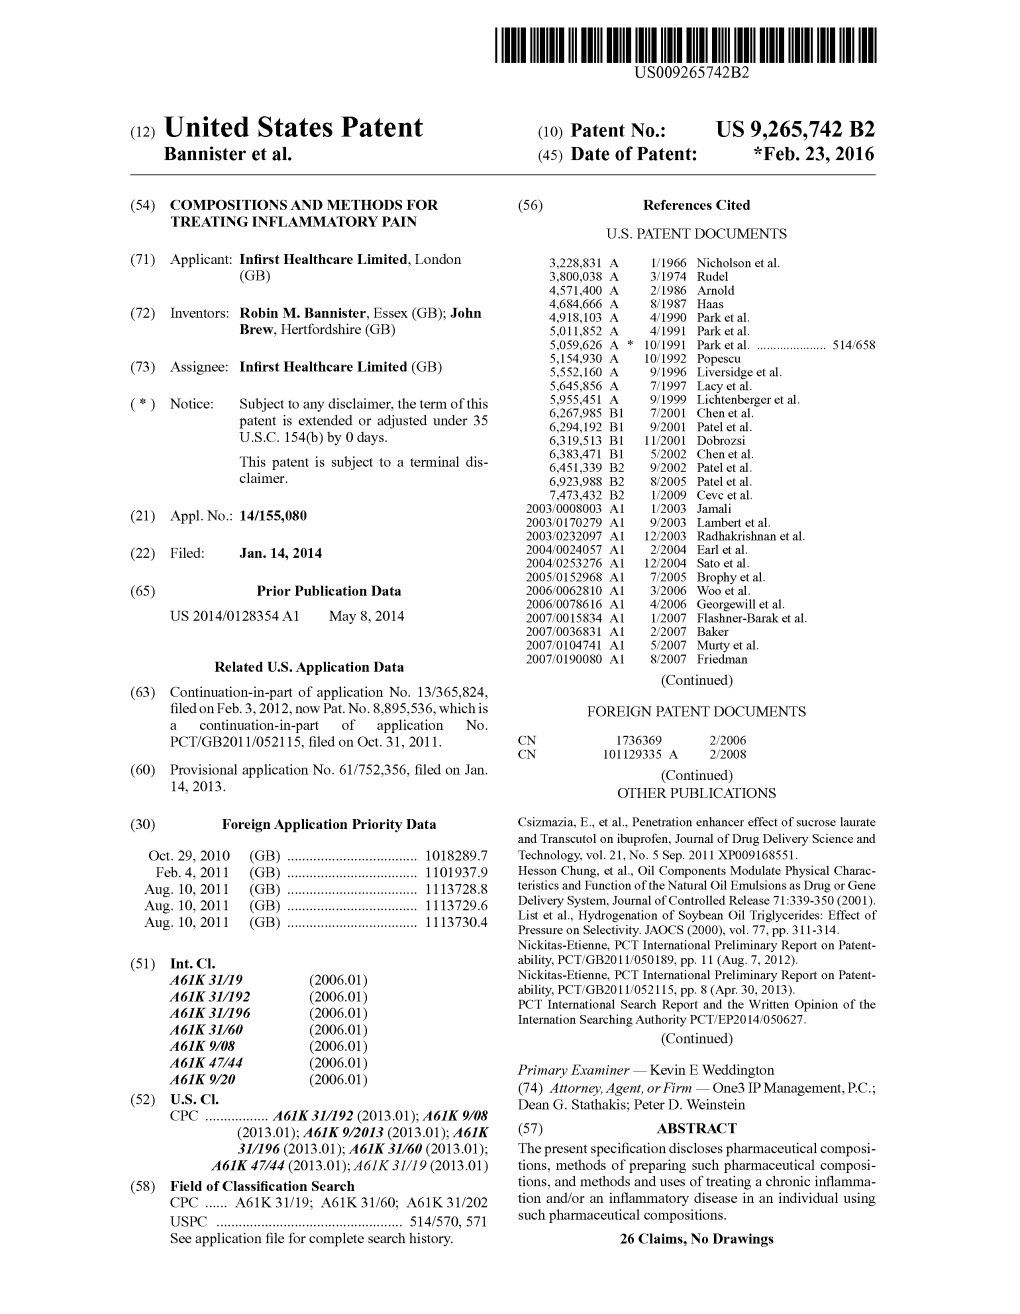 (12) United States Patent (10) Patent No.: US 9,265,742 B2 Bannister Et Al